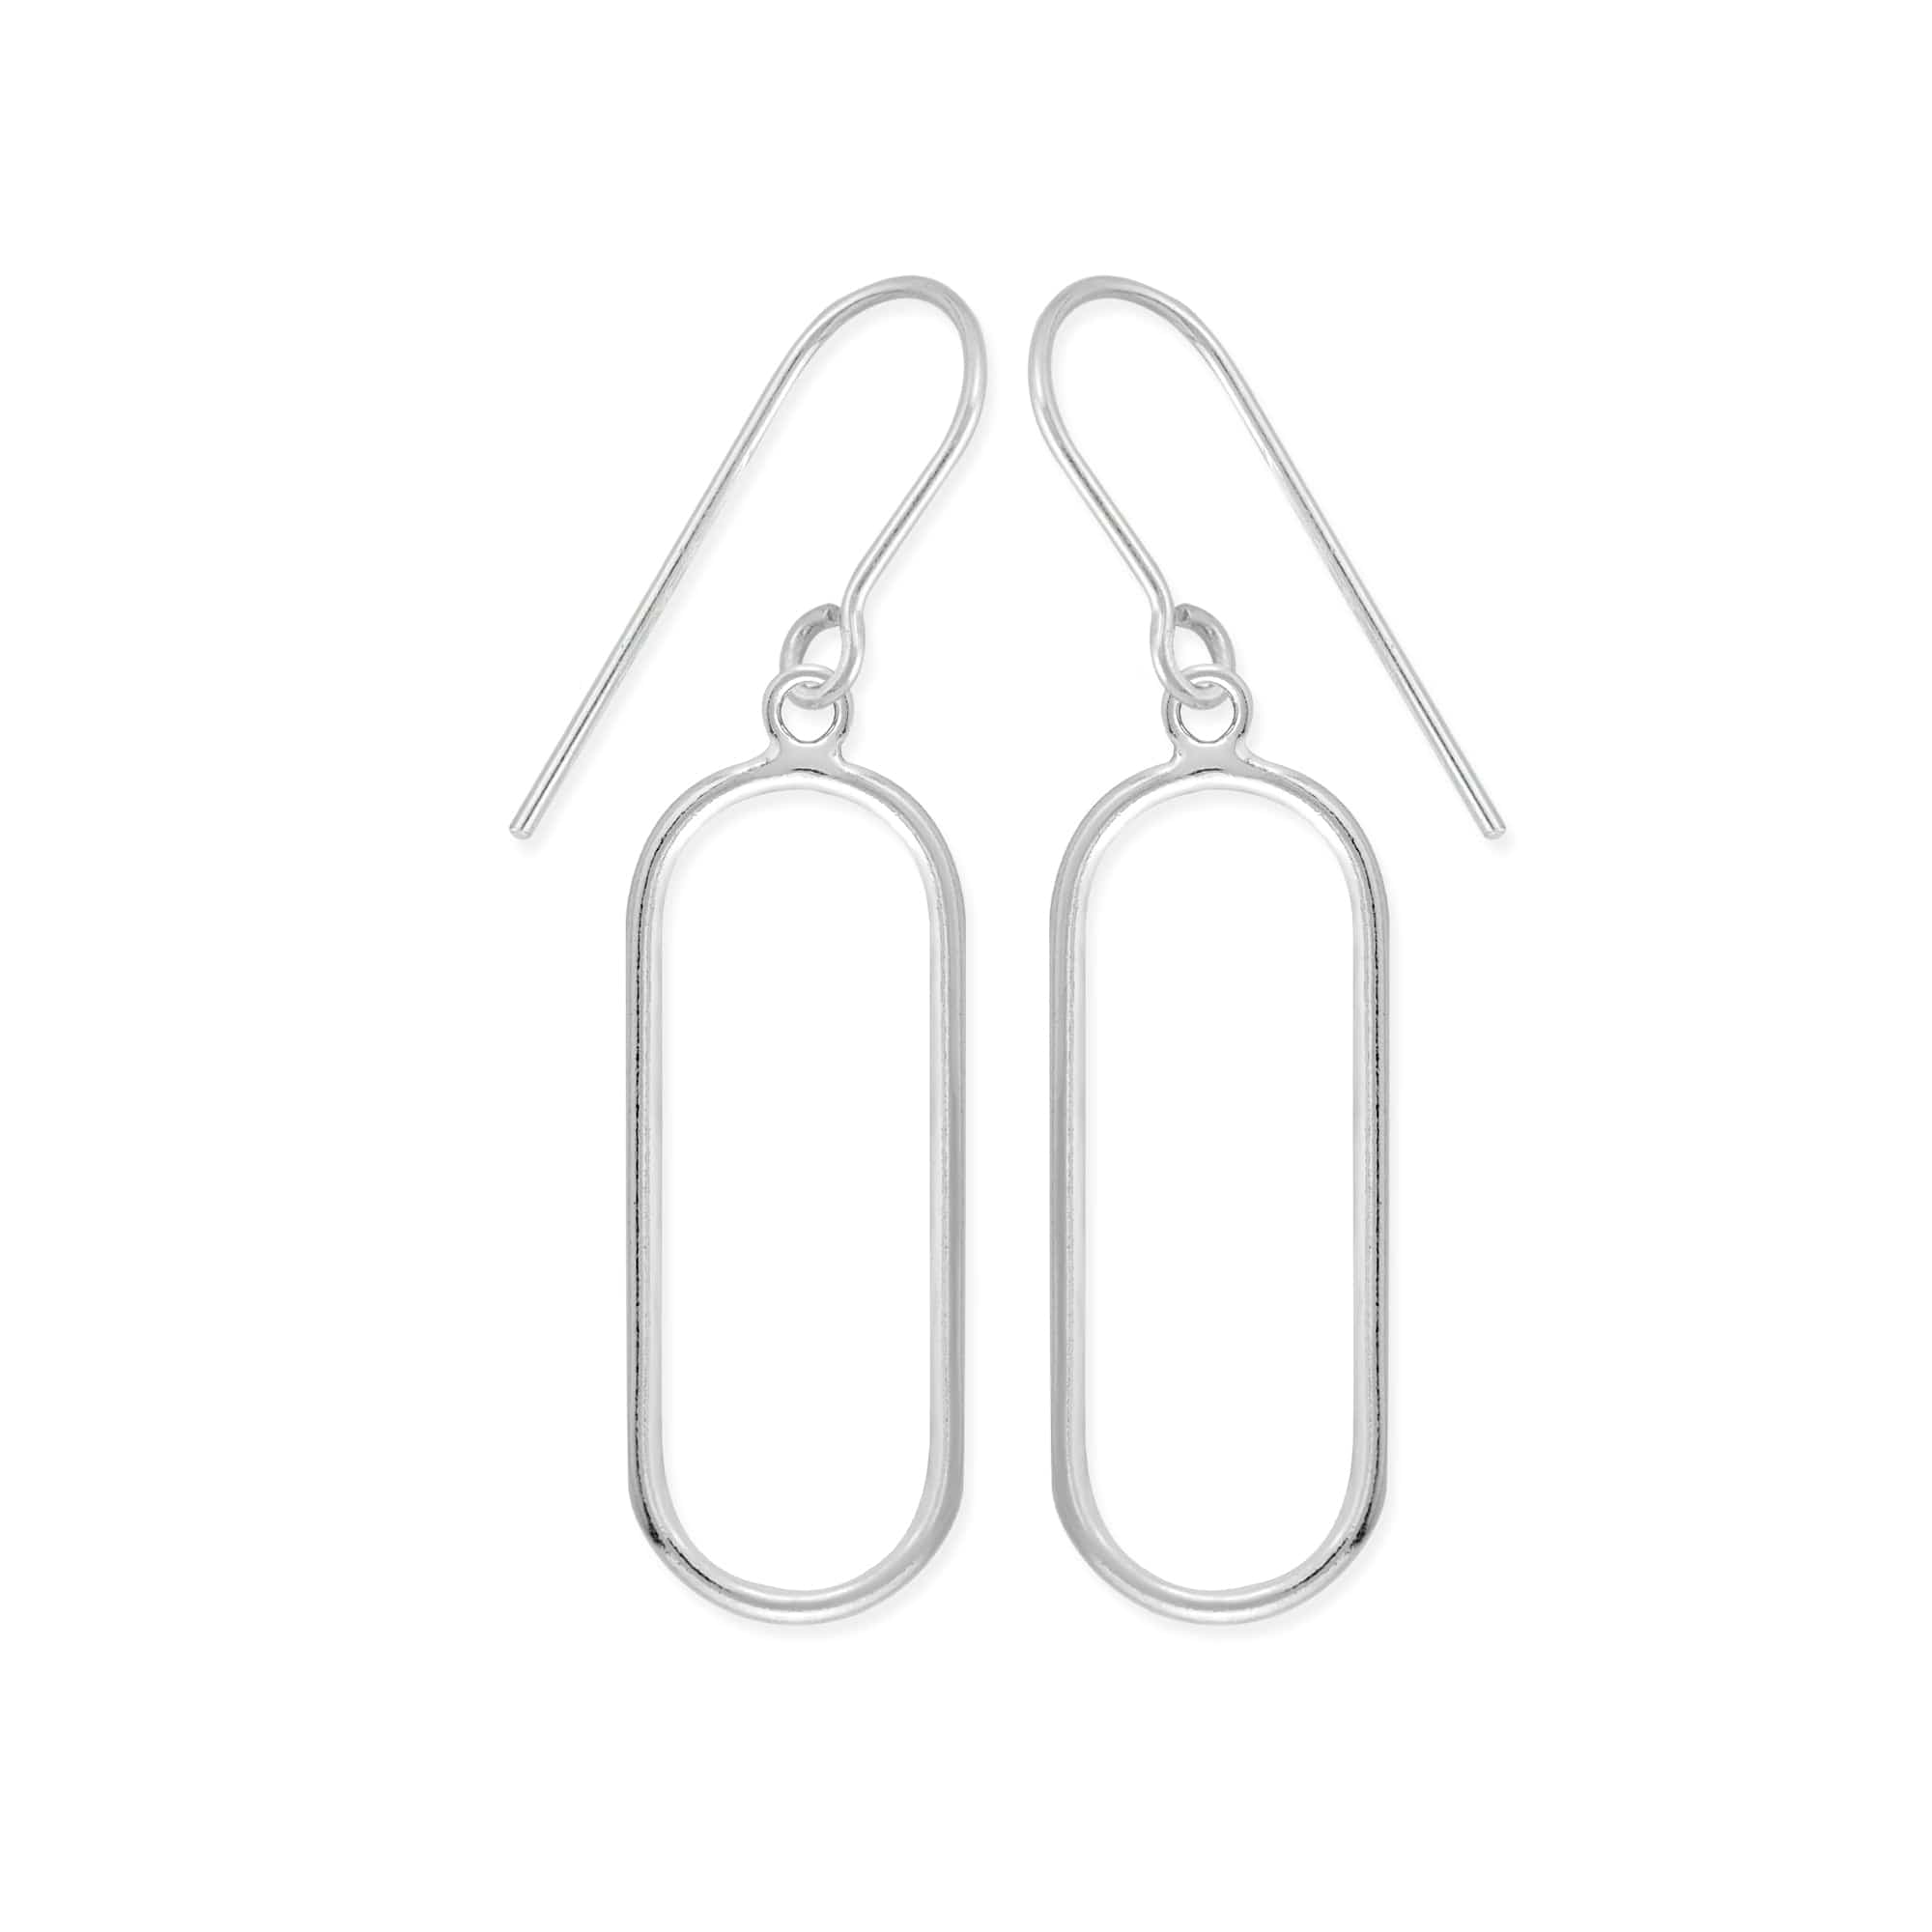 Boma Jewelry Earrings Long Oval Earrings